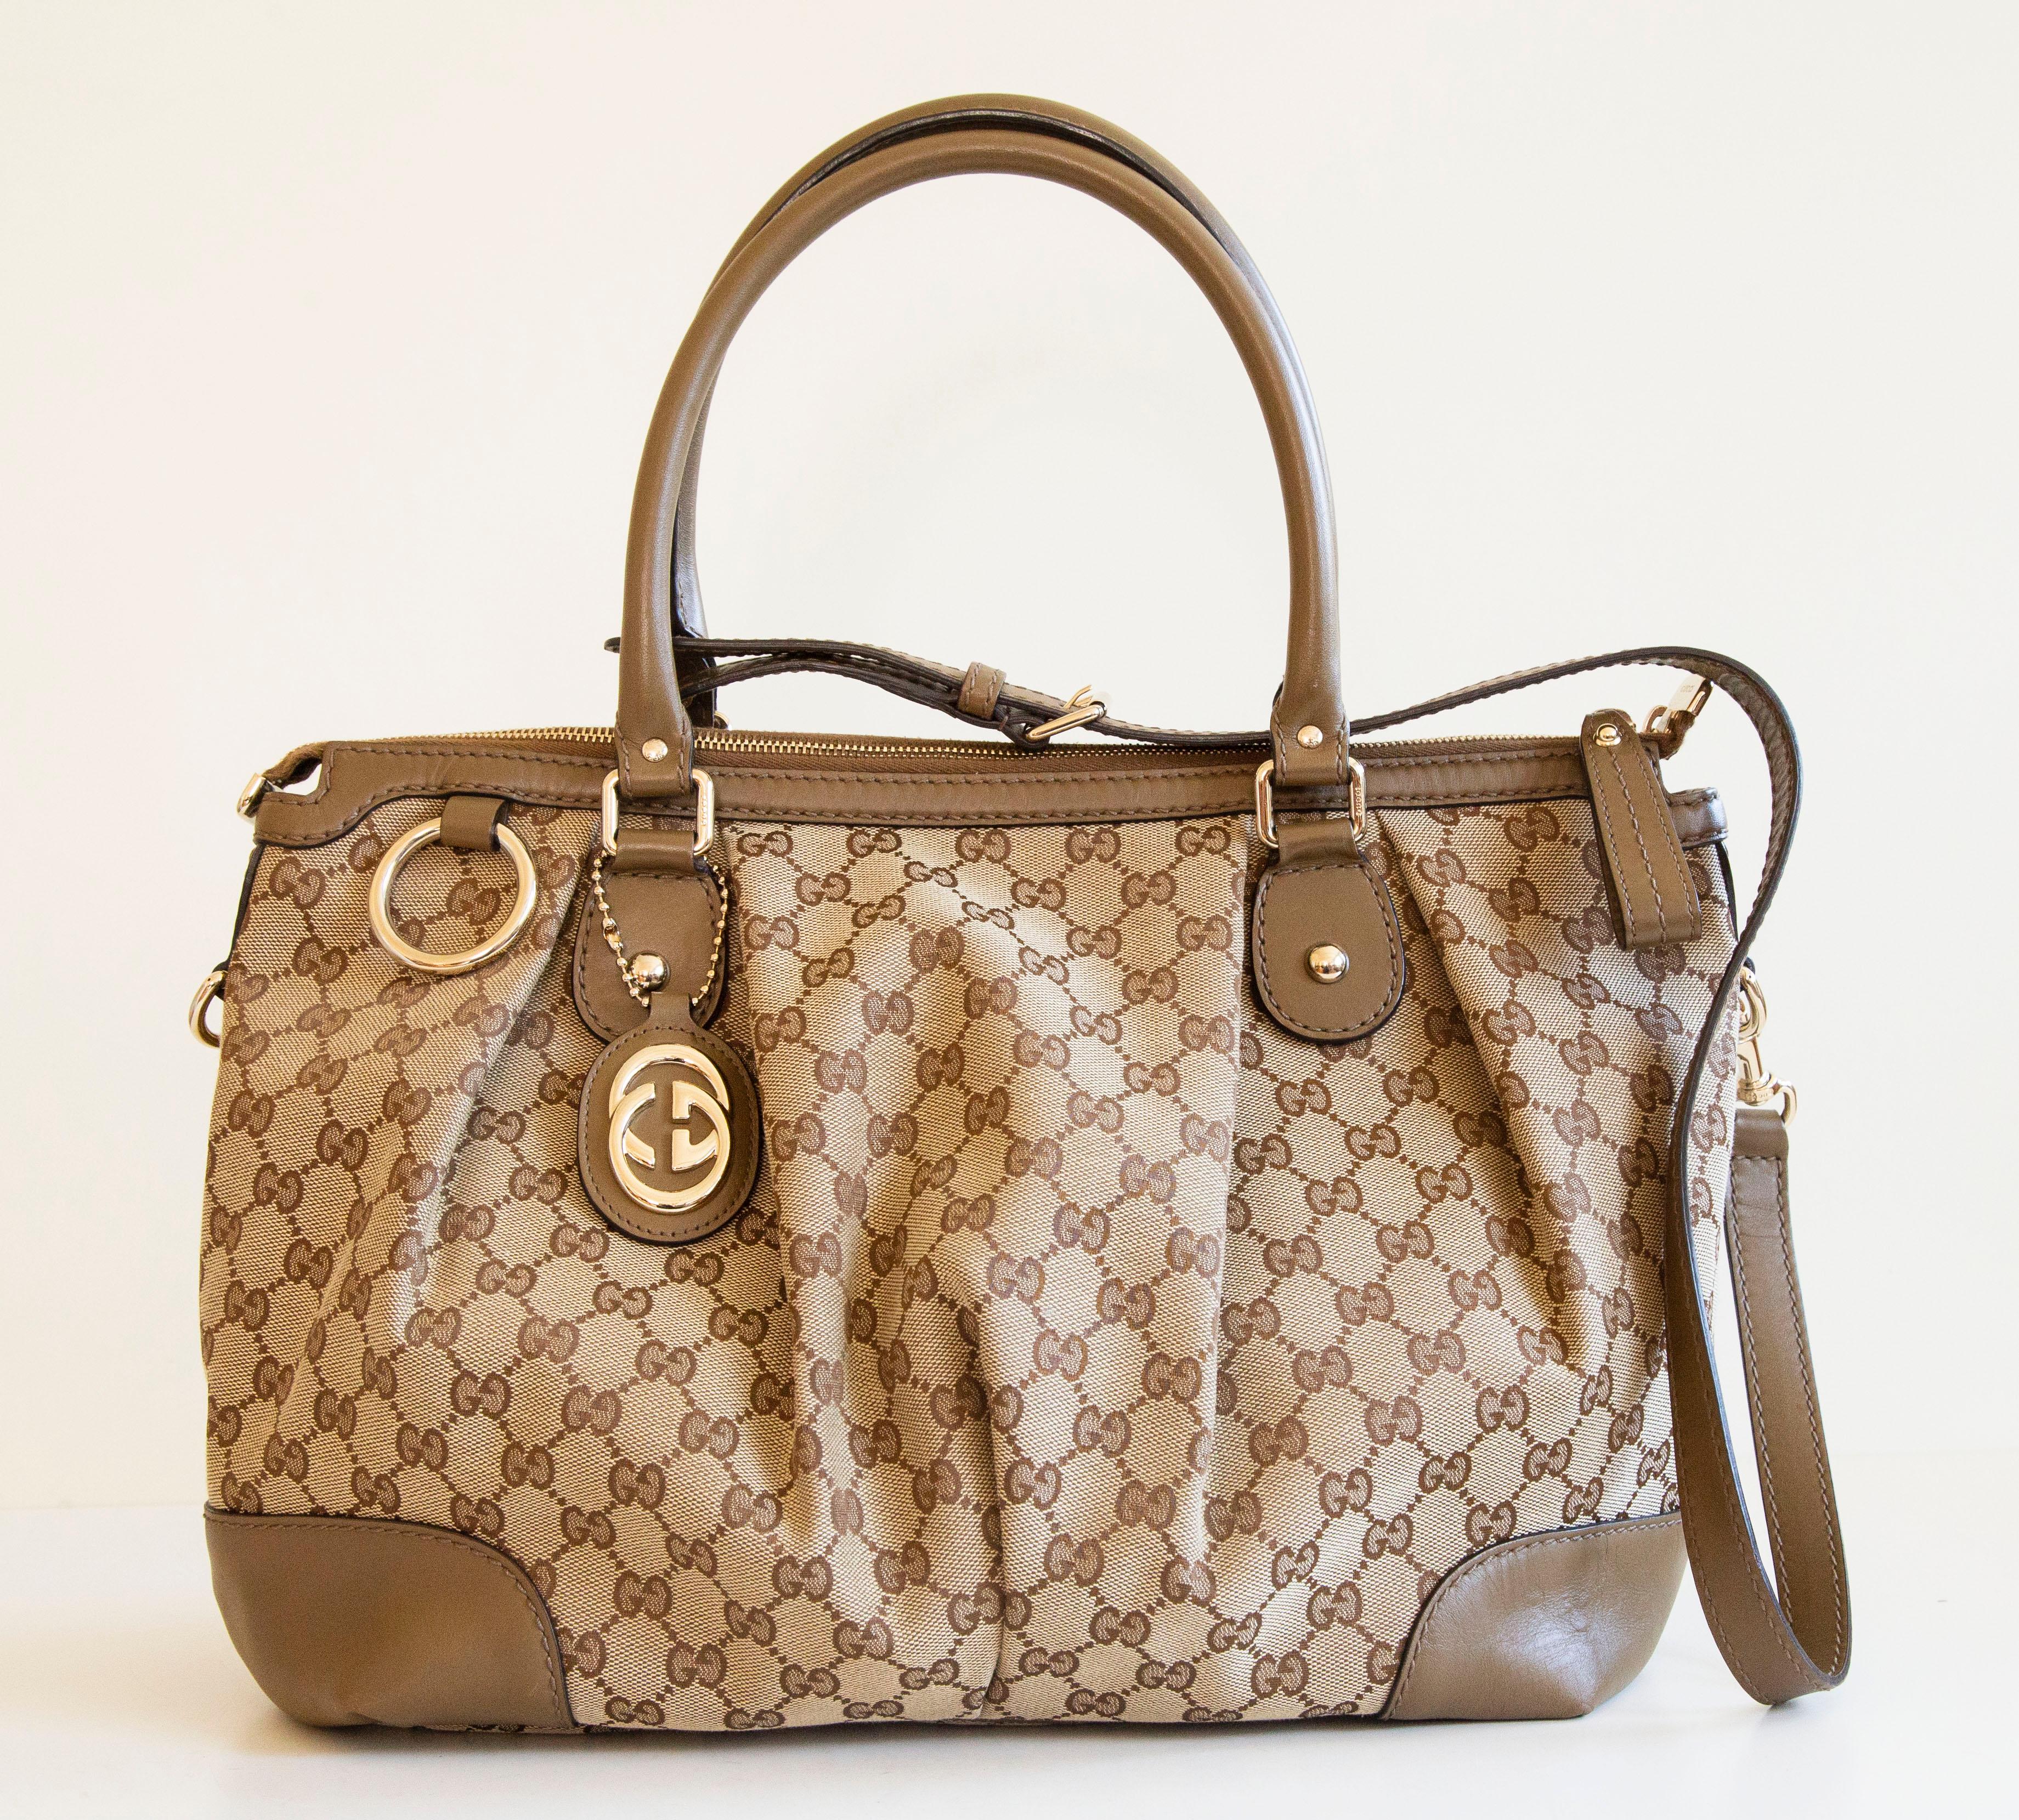 Un authentique sac à double usage Gucci Sukey. Le sac peut être porté à la fois comme un sac à poignée supérieure ou comme un sac à bandoulière, la sangle est amovible. Le sac présente une toile GG, des garnitures en cuir brun/ocre et des